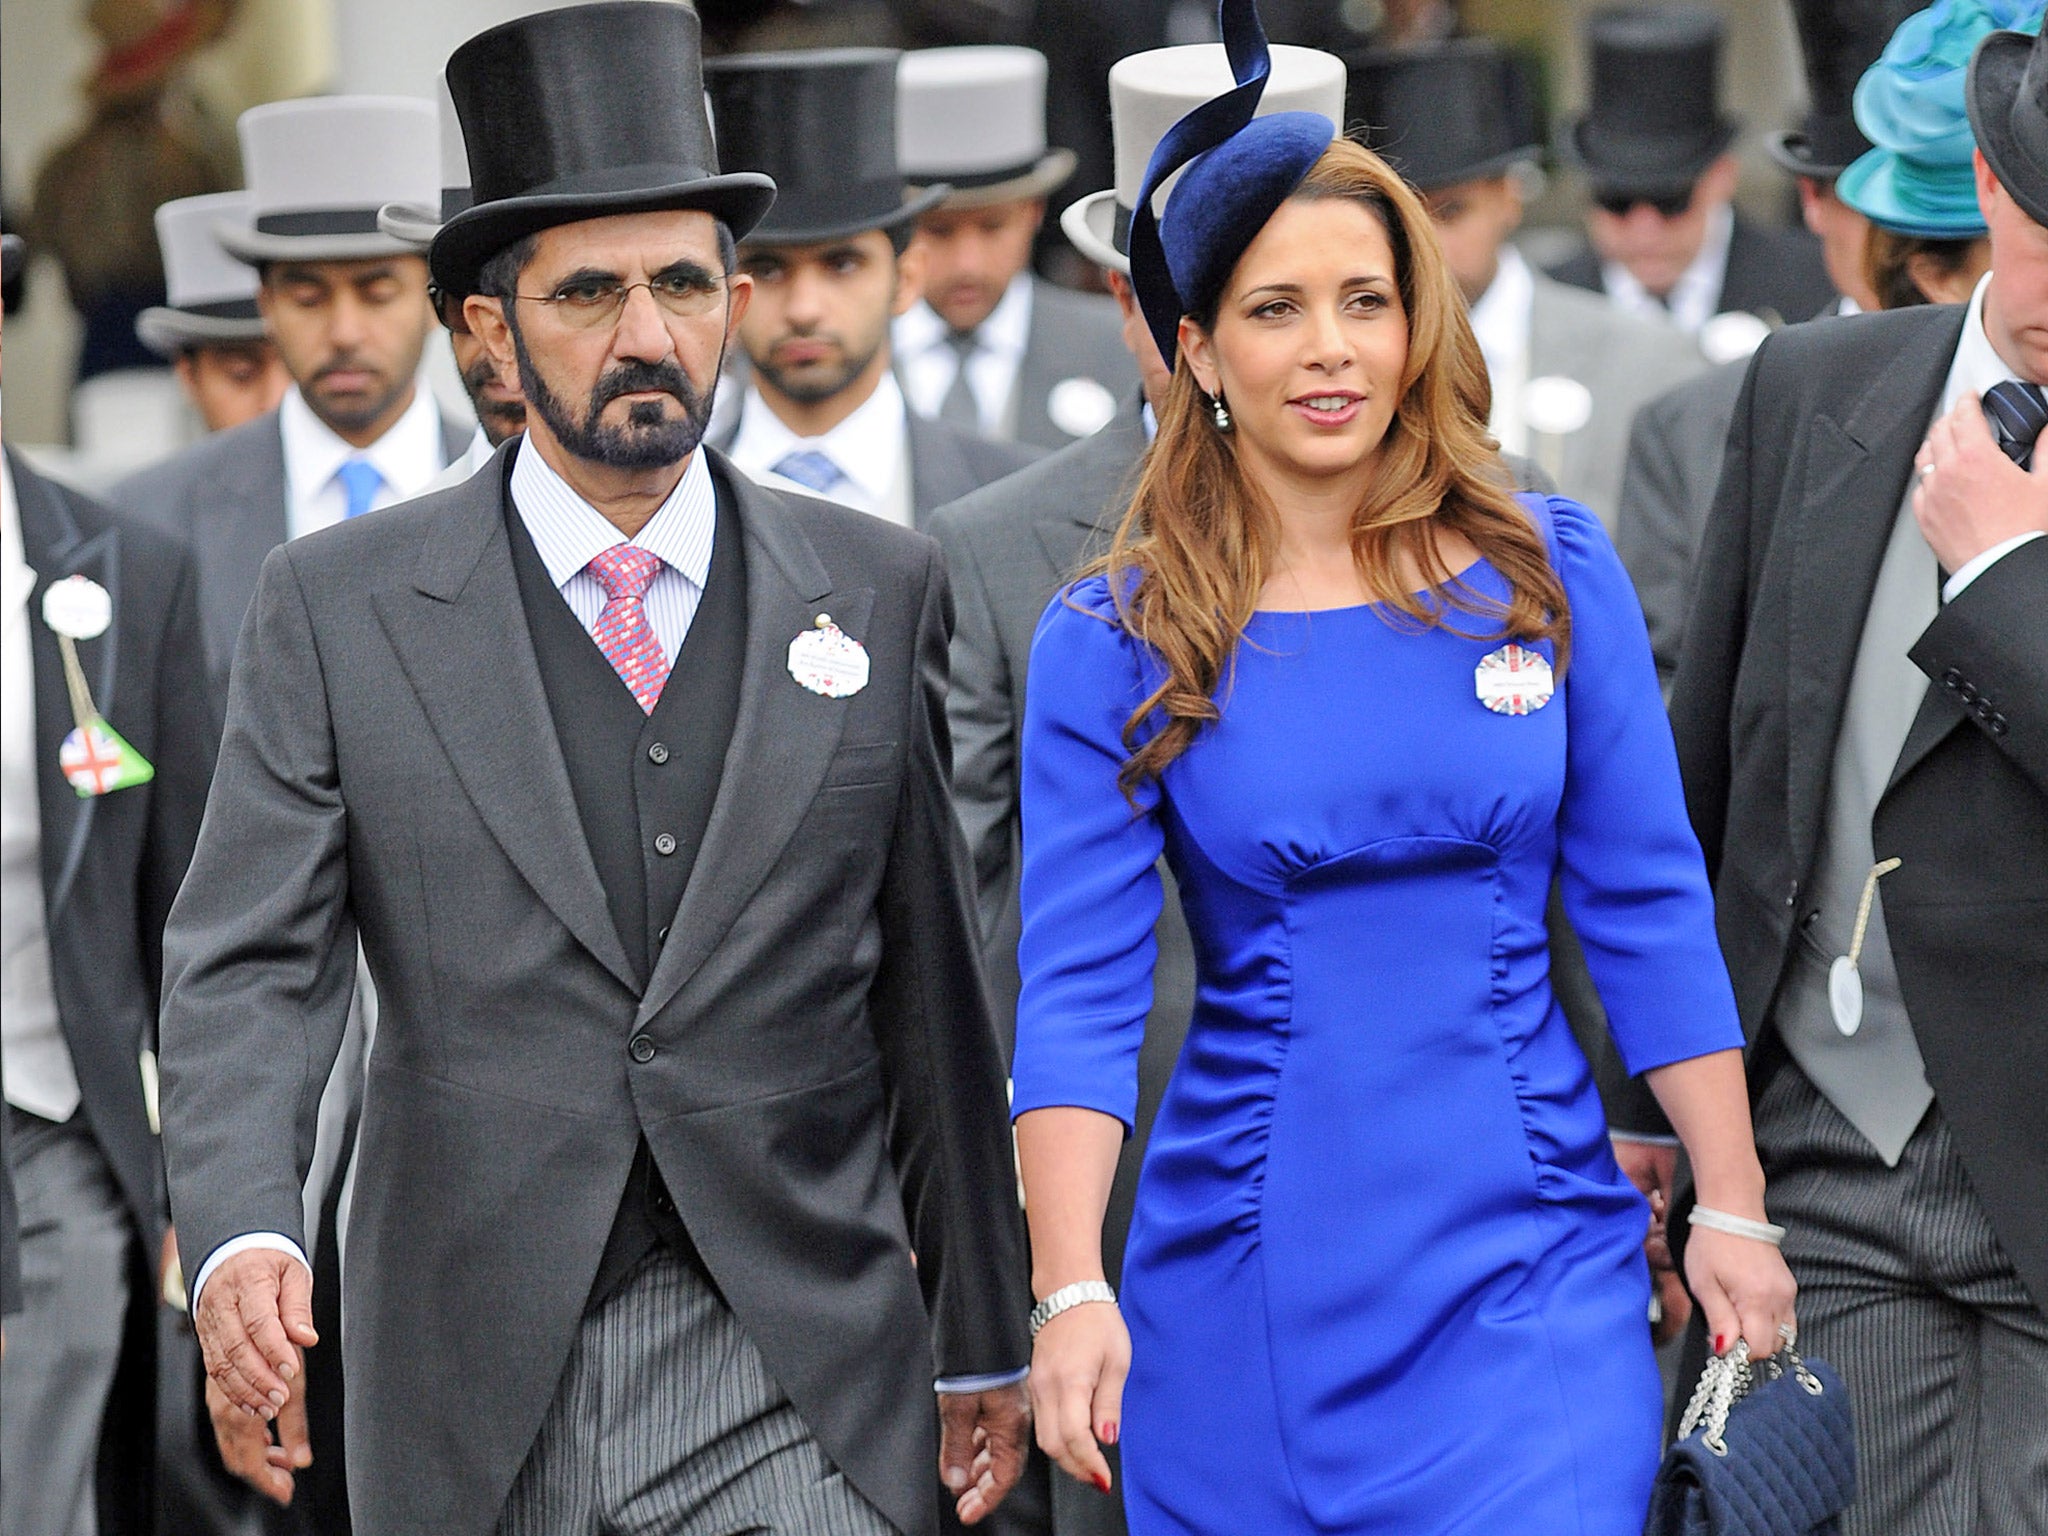 Sheikh Mohammed with Princess Haya Bint Al Hussein at Royal Ascot last year